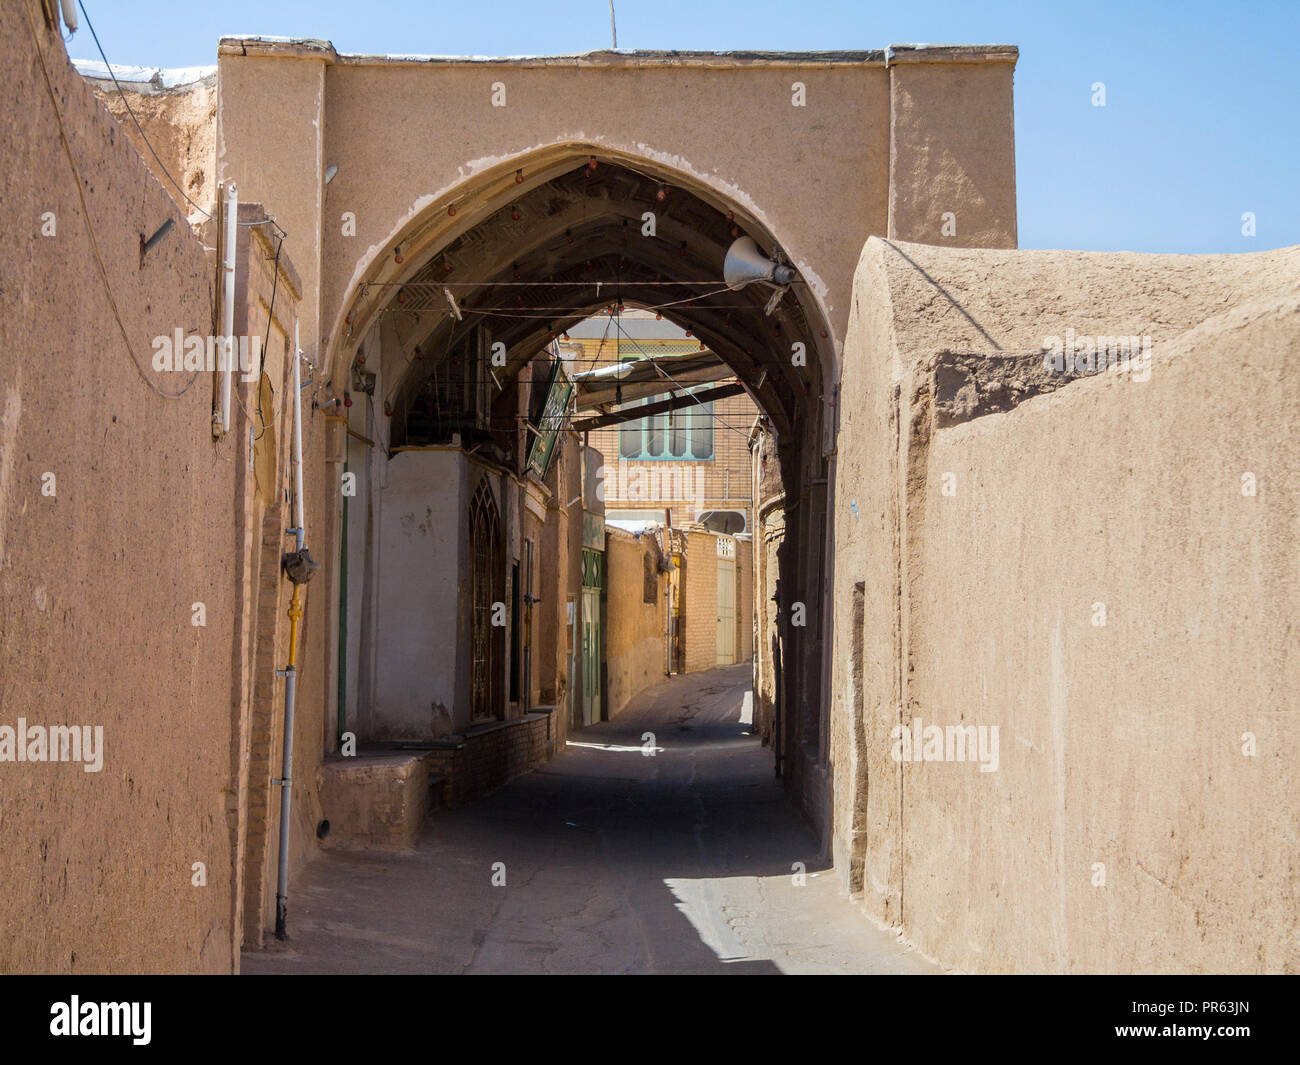 Strada tipica della vecchia città di Kashan, Iran, con le sue tipiche pareti in argilla, antiche porte e edifici di argilla. Kashan è la città principale del centro di Iran Foto Stock